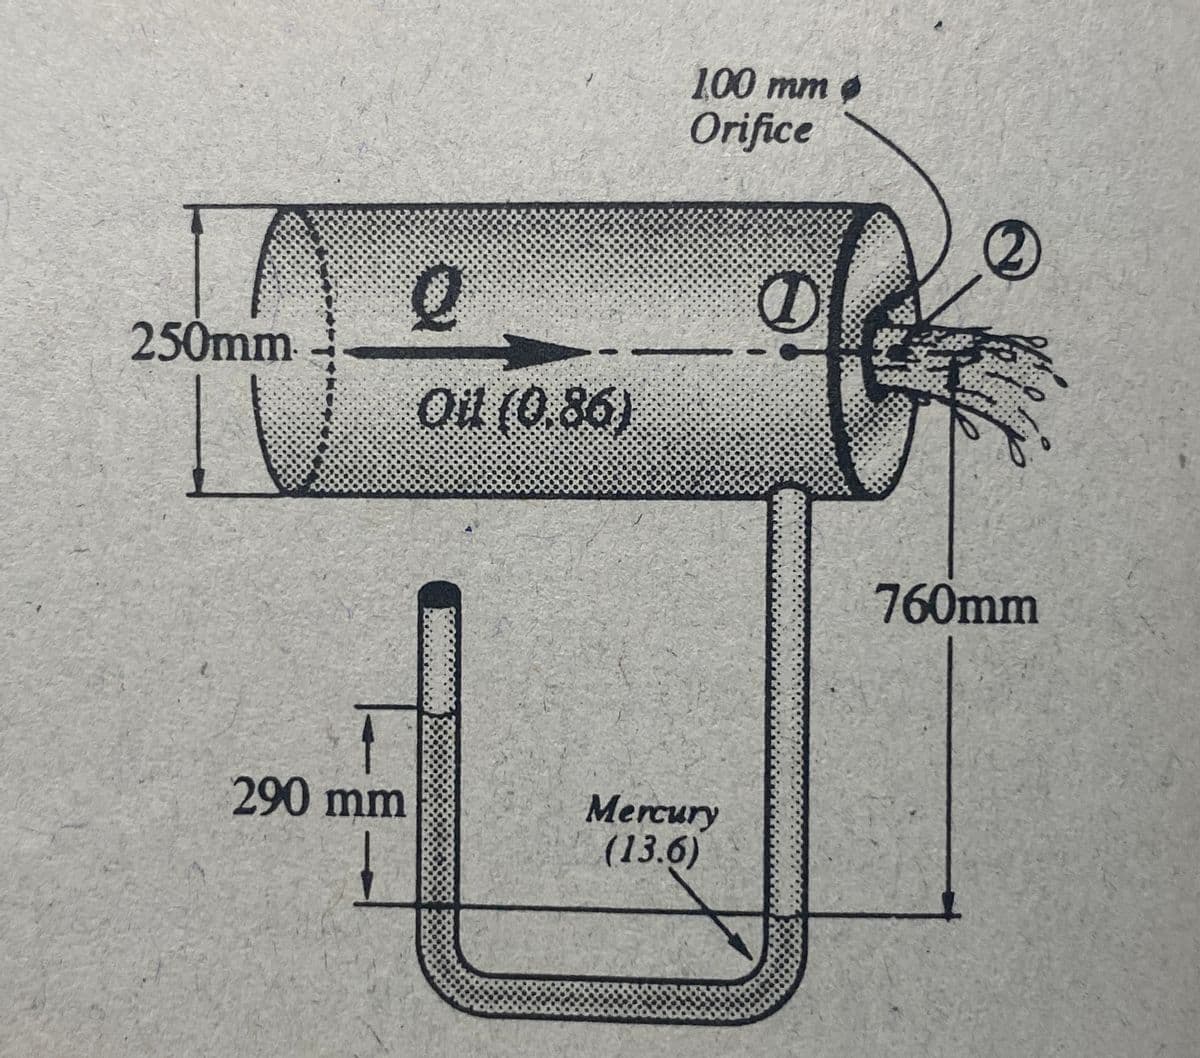 100 mm
Orifice
250mm
Oil (0.86)
760mm
290 mm
Mercury
(13.6)
